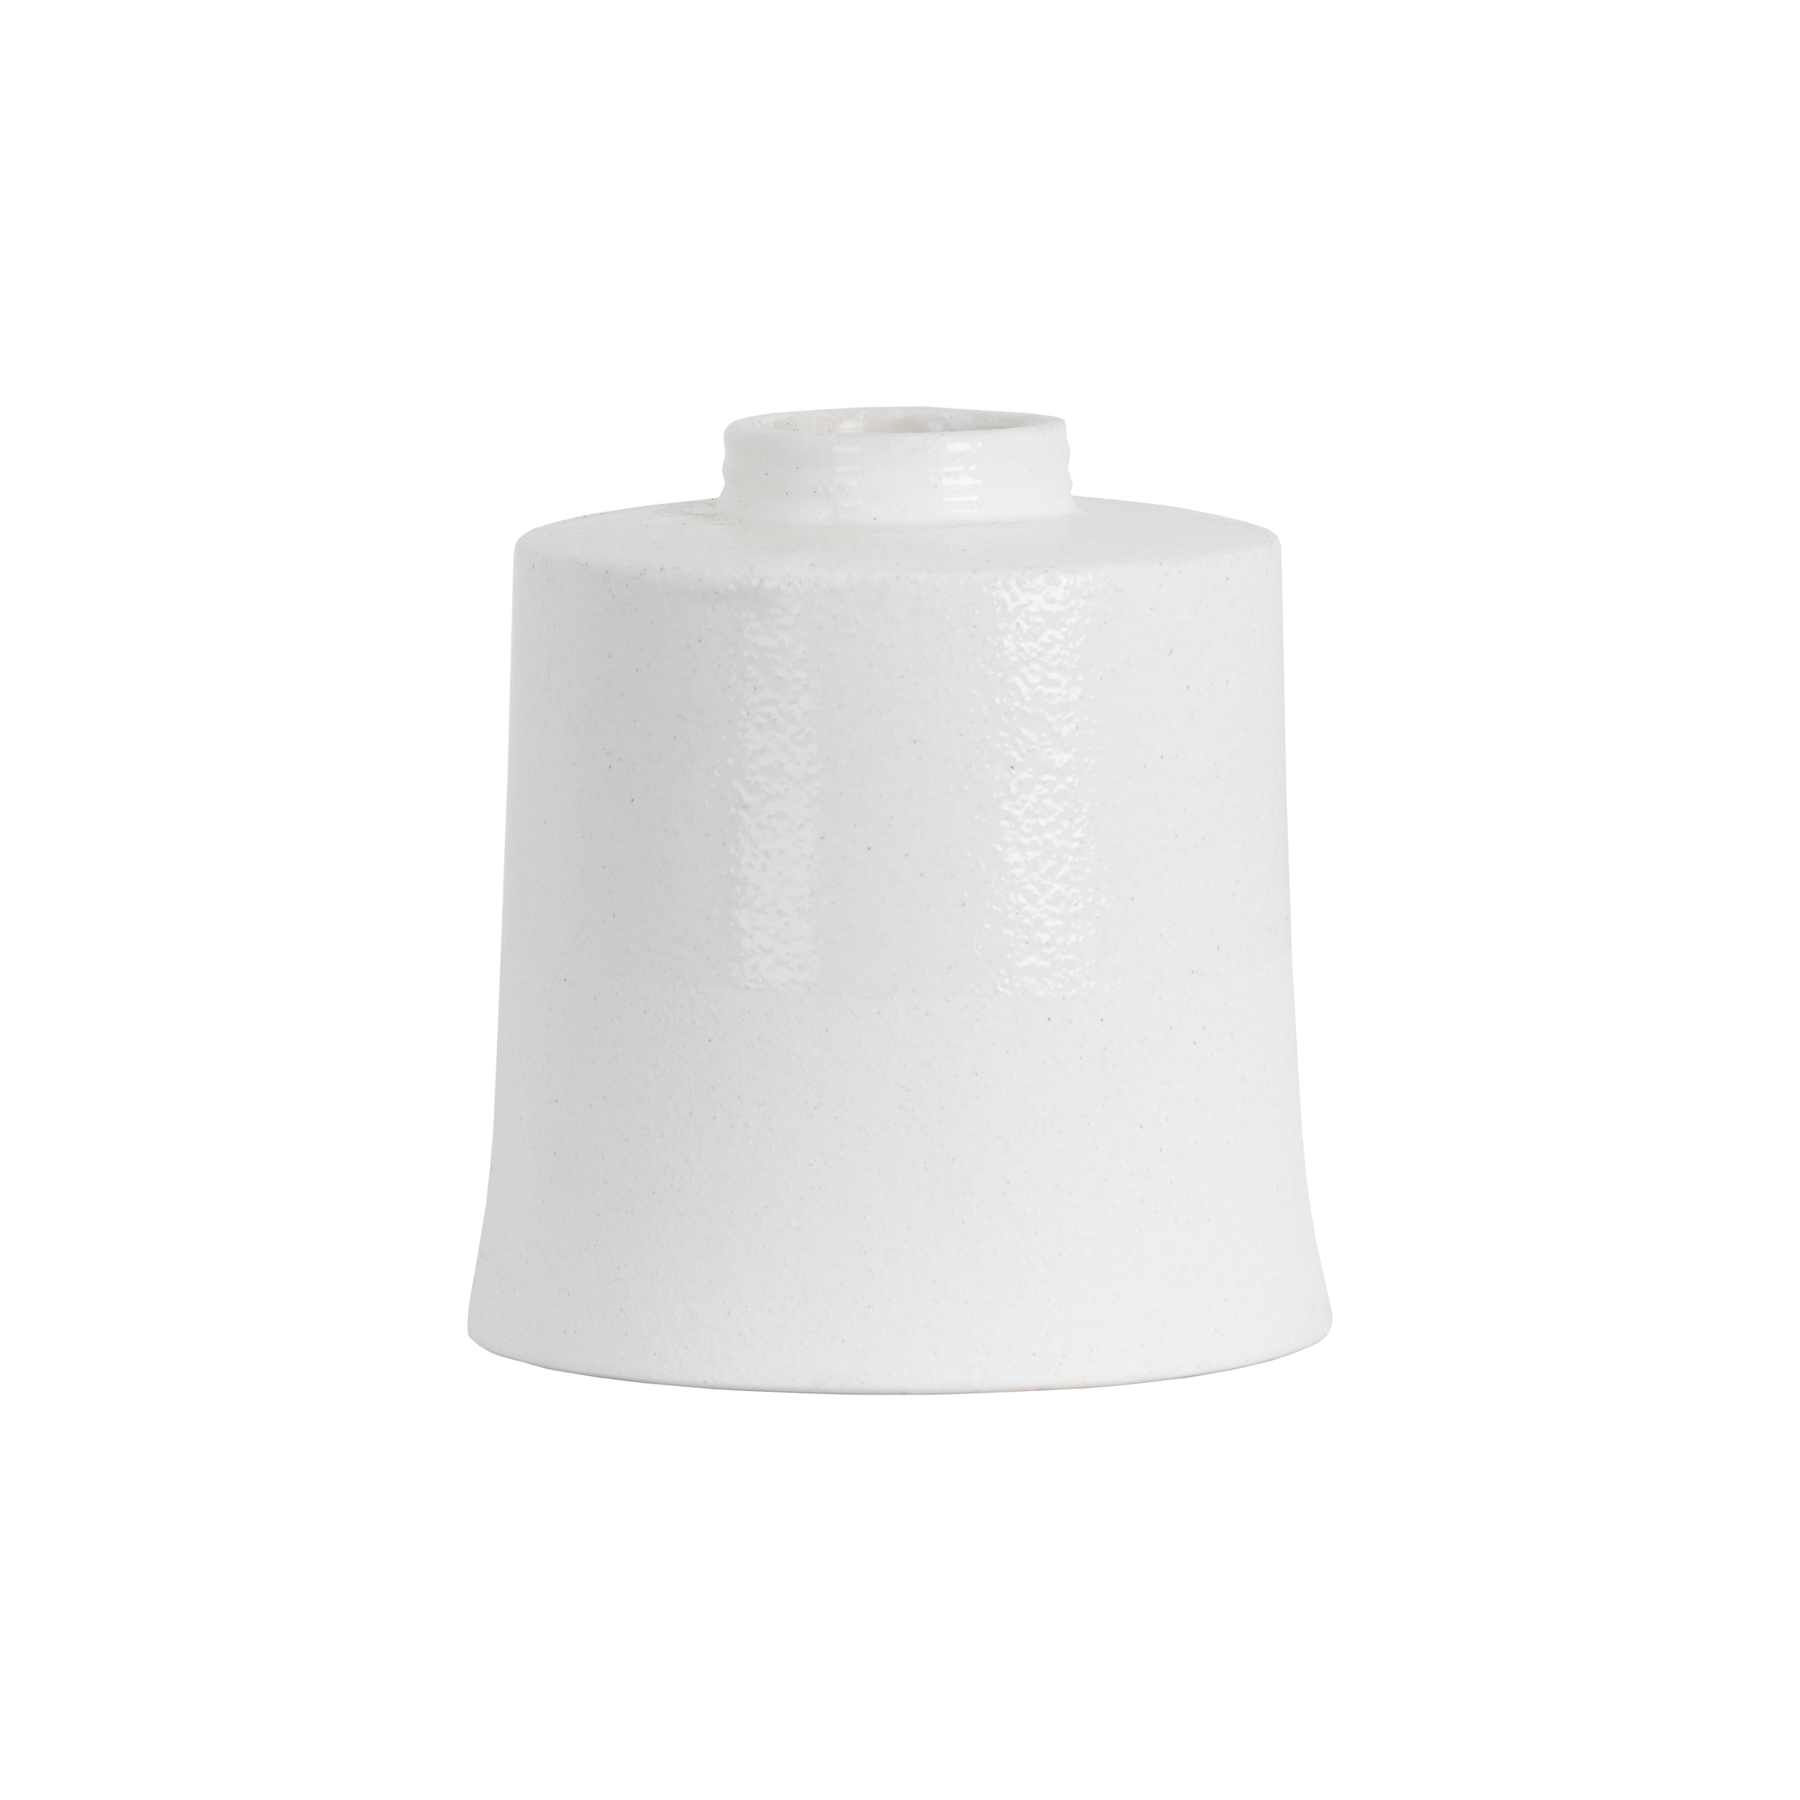 White With Grey Detail Large Cylindrical Ceramic Vase - Image 1